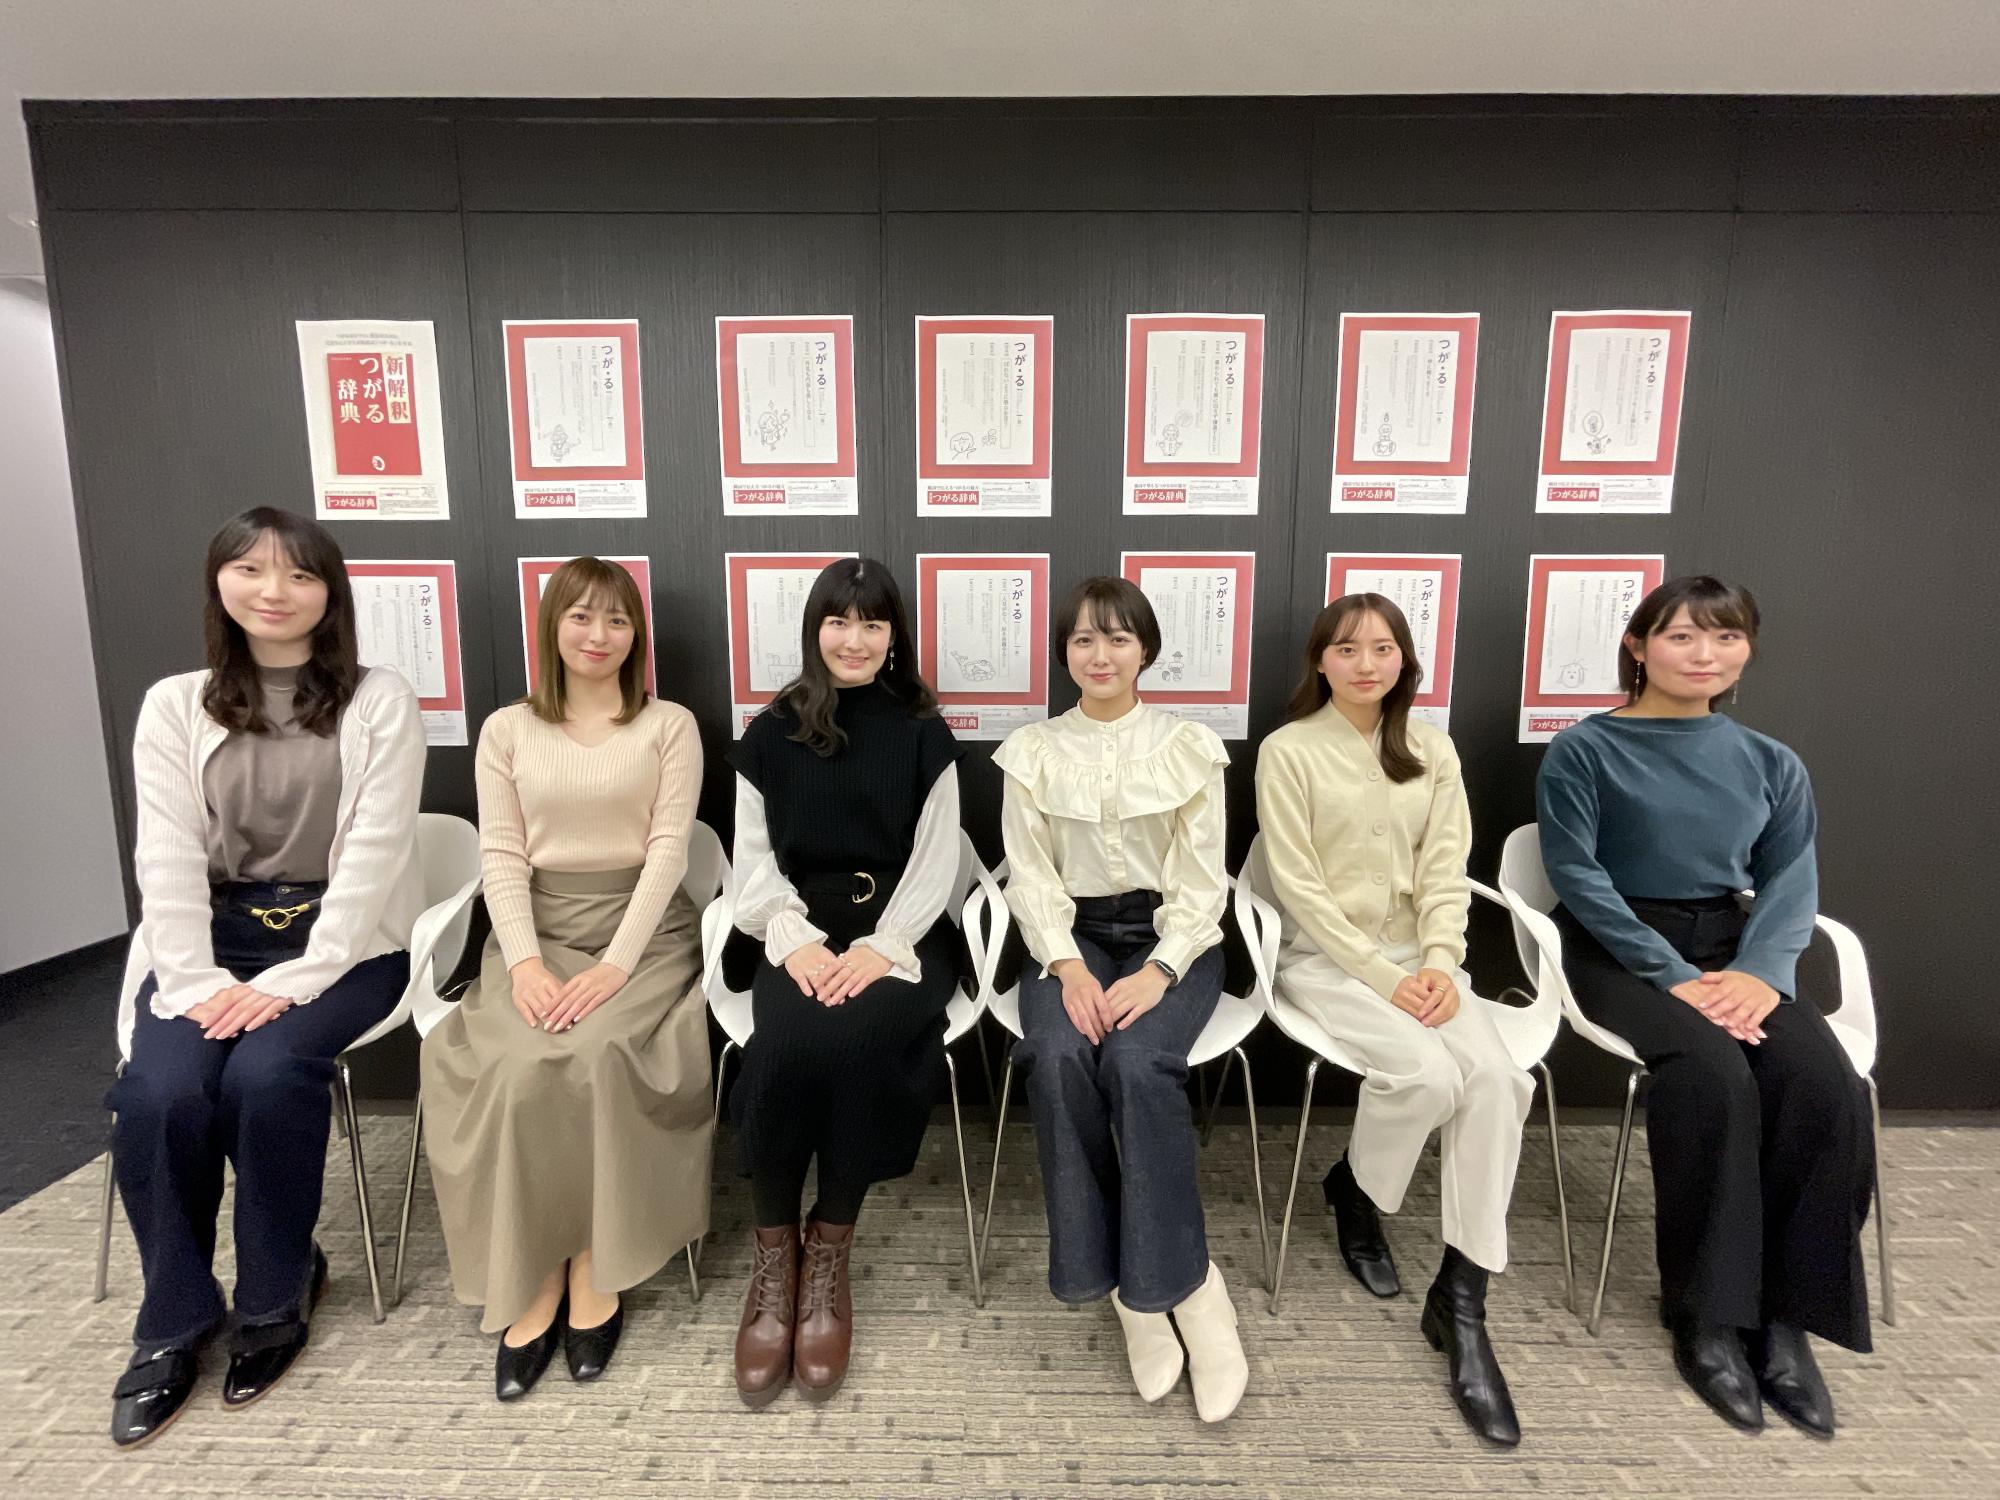 壁に展示されている広告ポスターをバックに6名の女性たちが椅子に座り記念撮影をしている写真